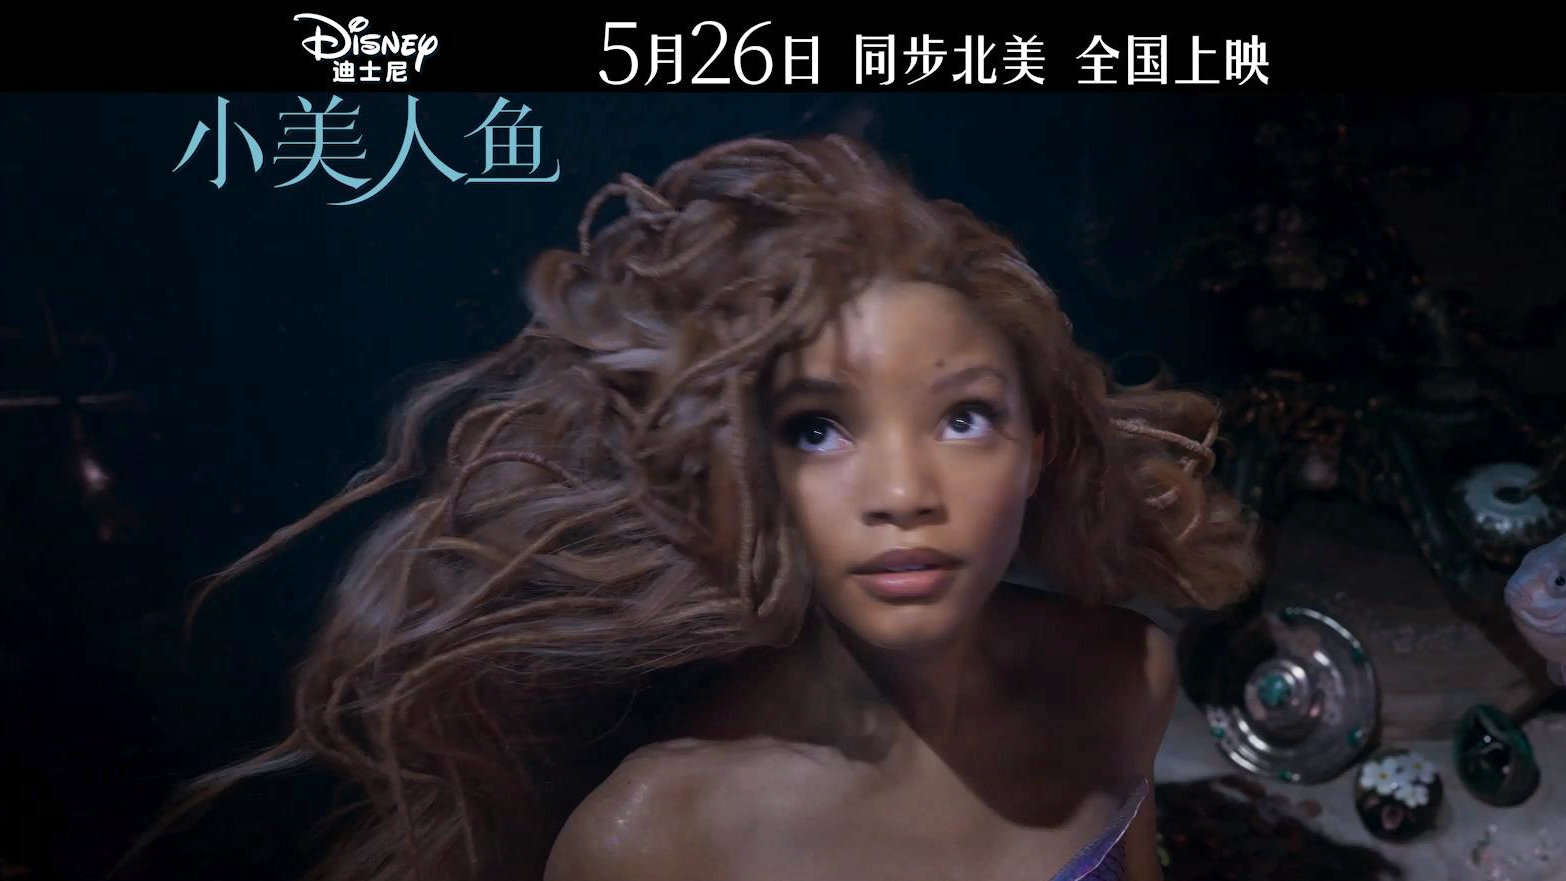 迪士尼真人电影《小美人鱼》发布中国内地定档预告